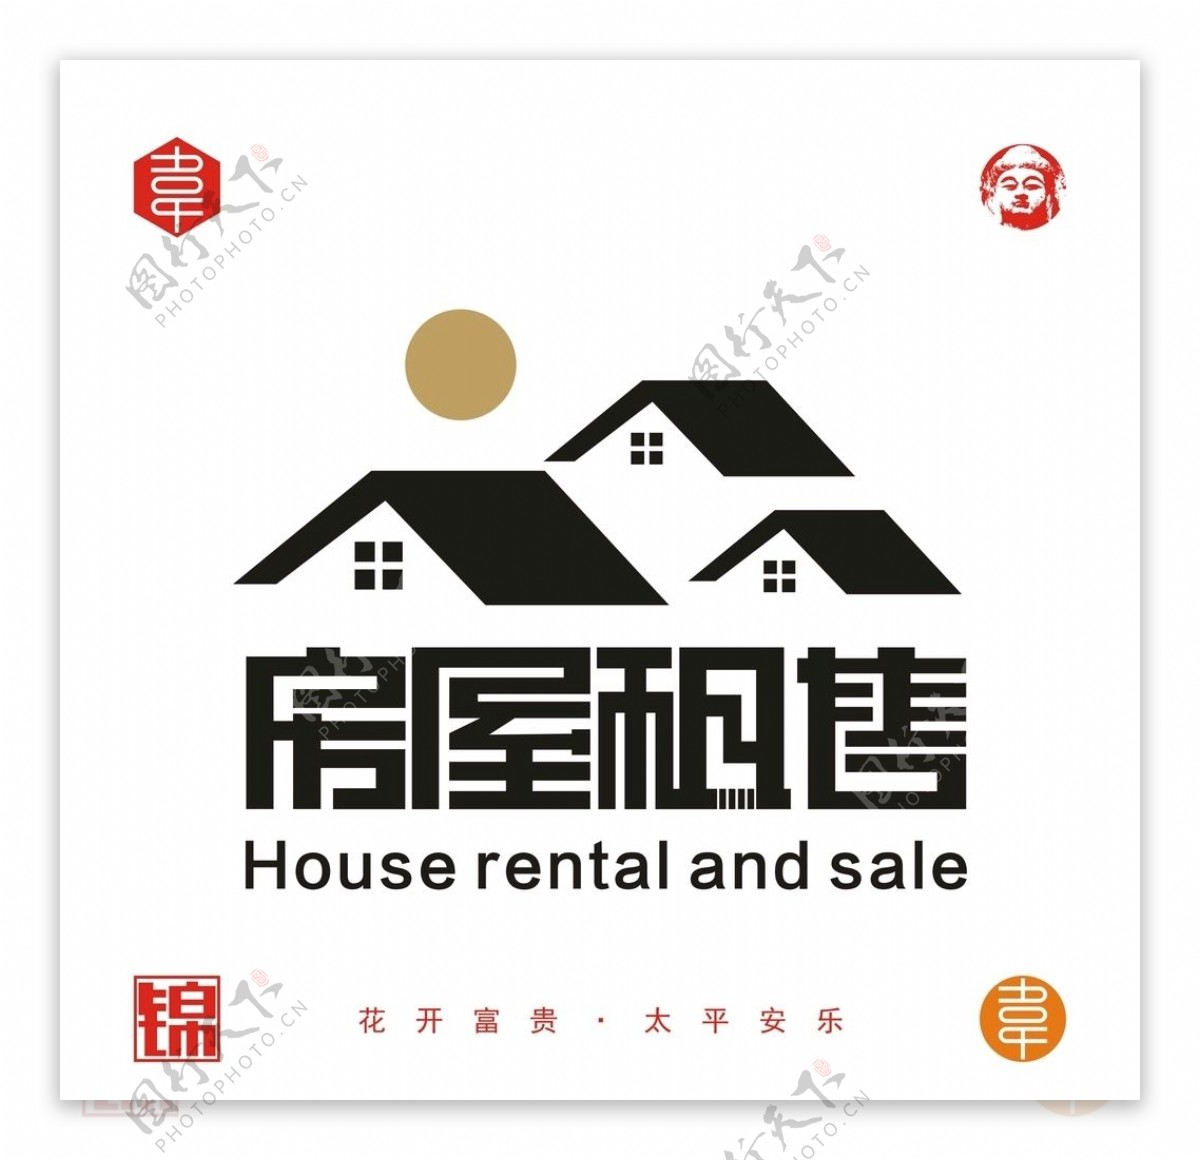 房屋租售矢量logo图片